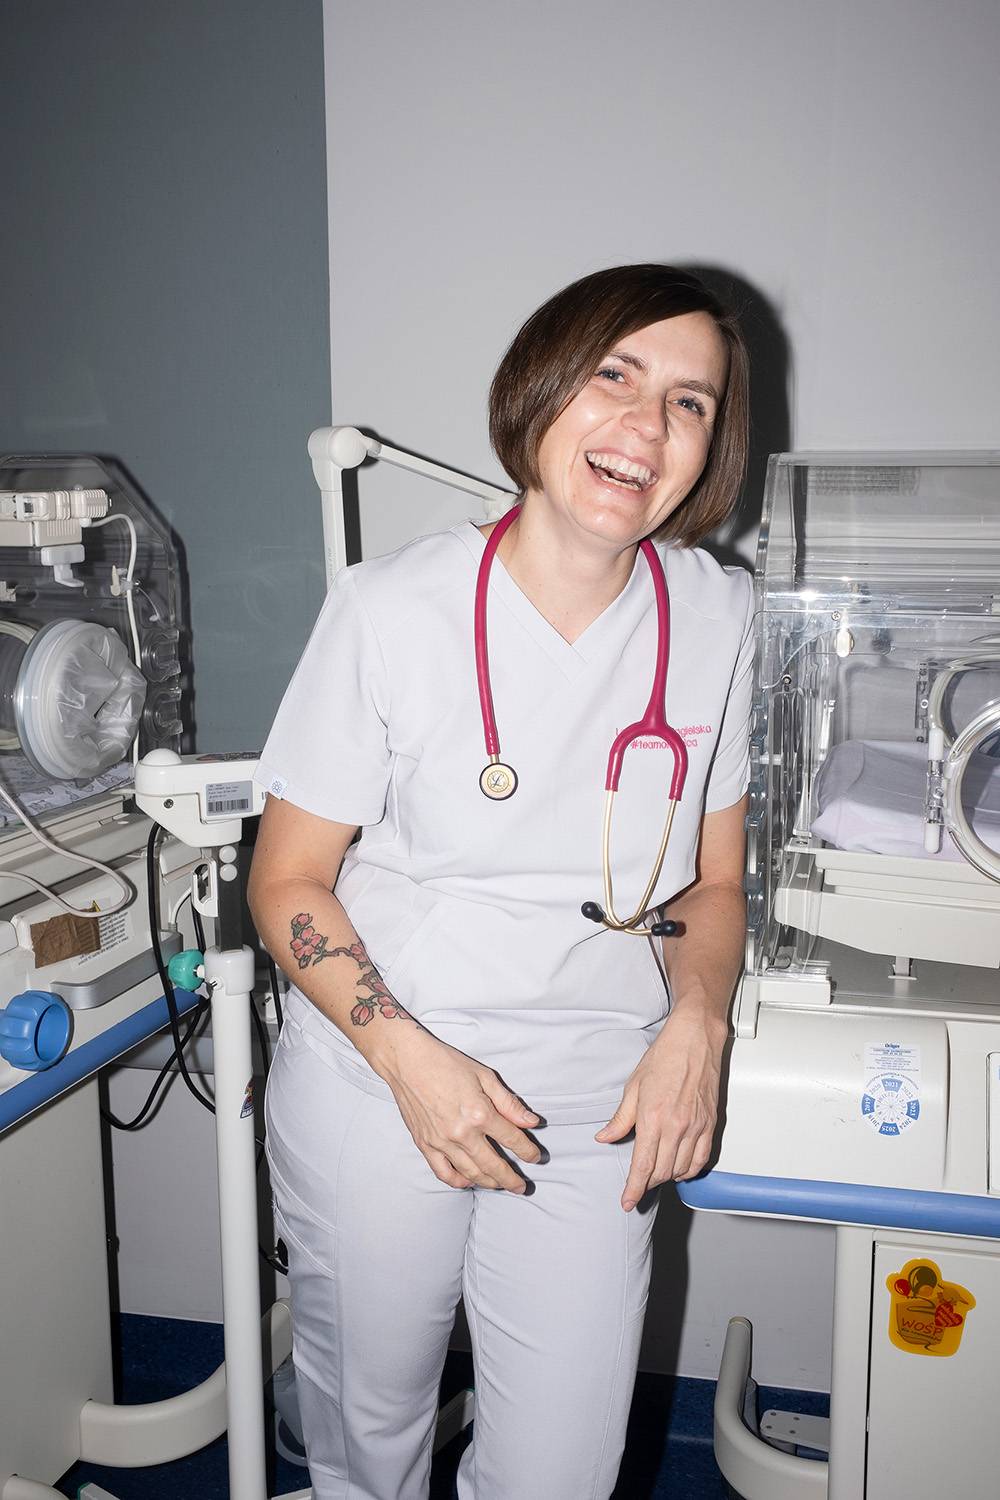 Gizela jest lekarką – ginekolożką, neonatolożką, położną. Najbardziej zajmuje ją praca i zwierzęta. (Fot. Joanna Musiał)